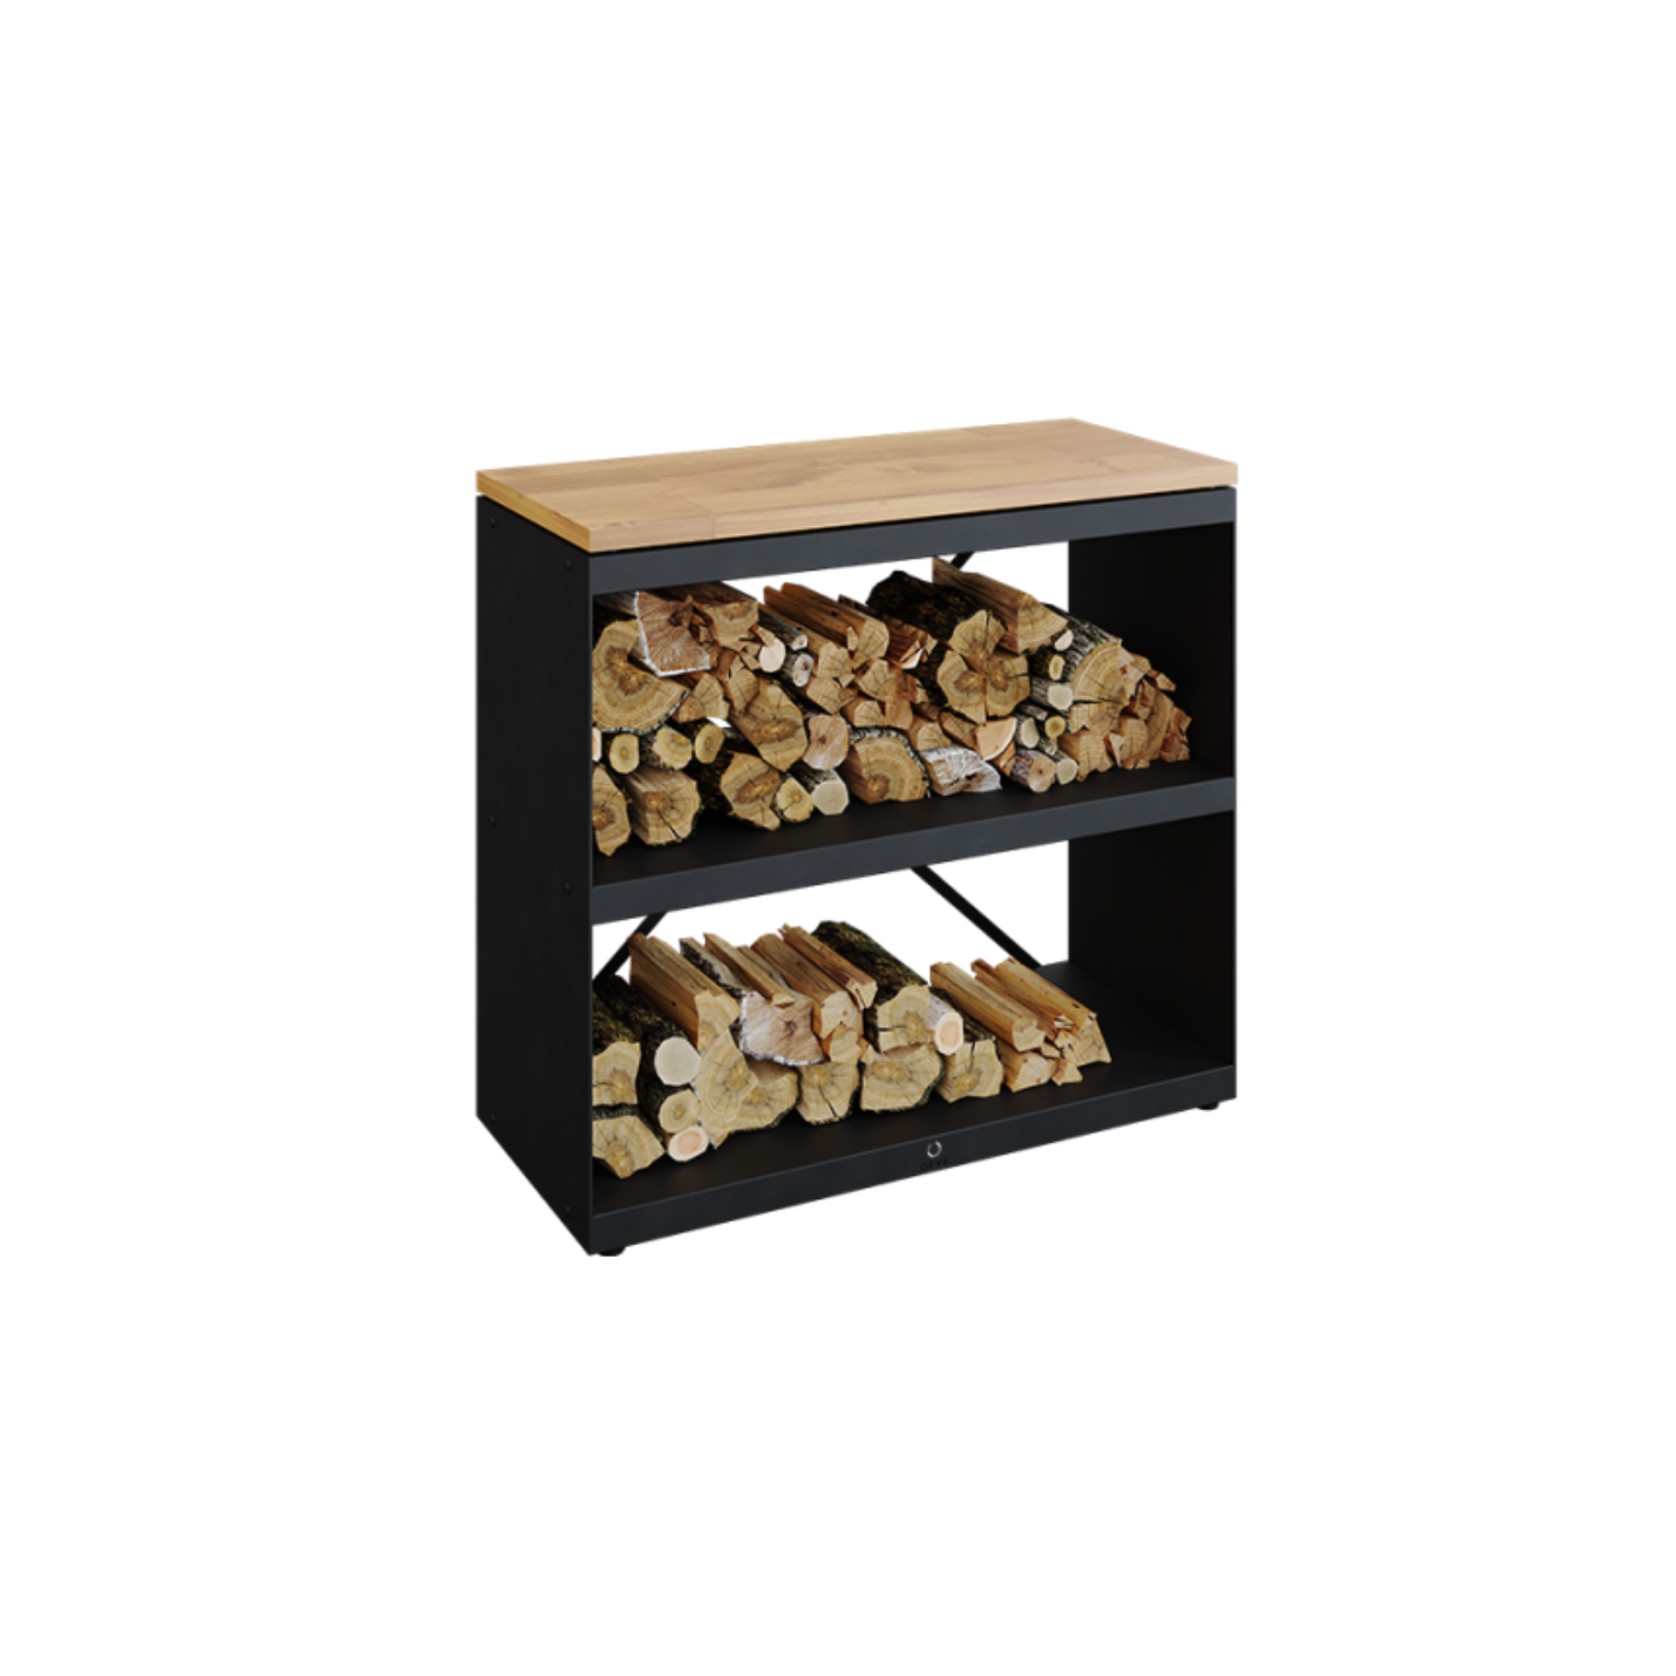 OFYR Wood Storage Dressoir w/ Teak Wood Tabletop - Black gallery detail image